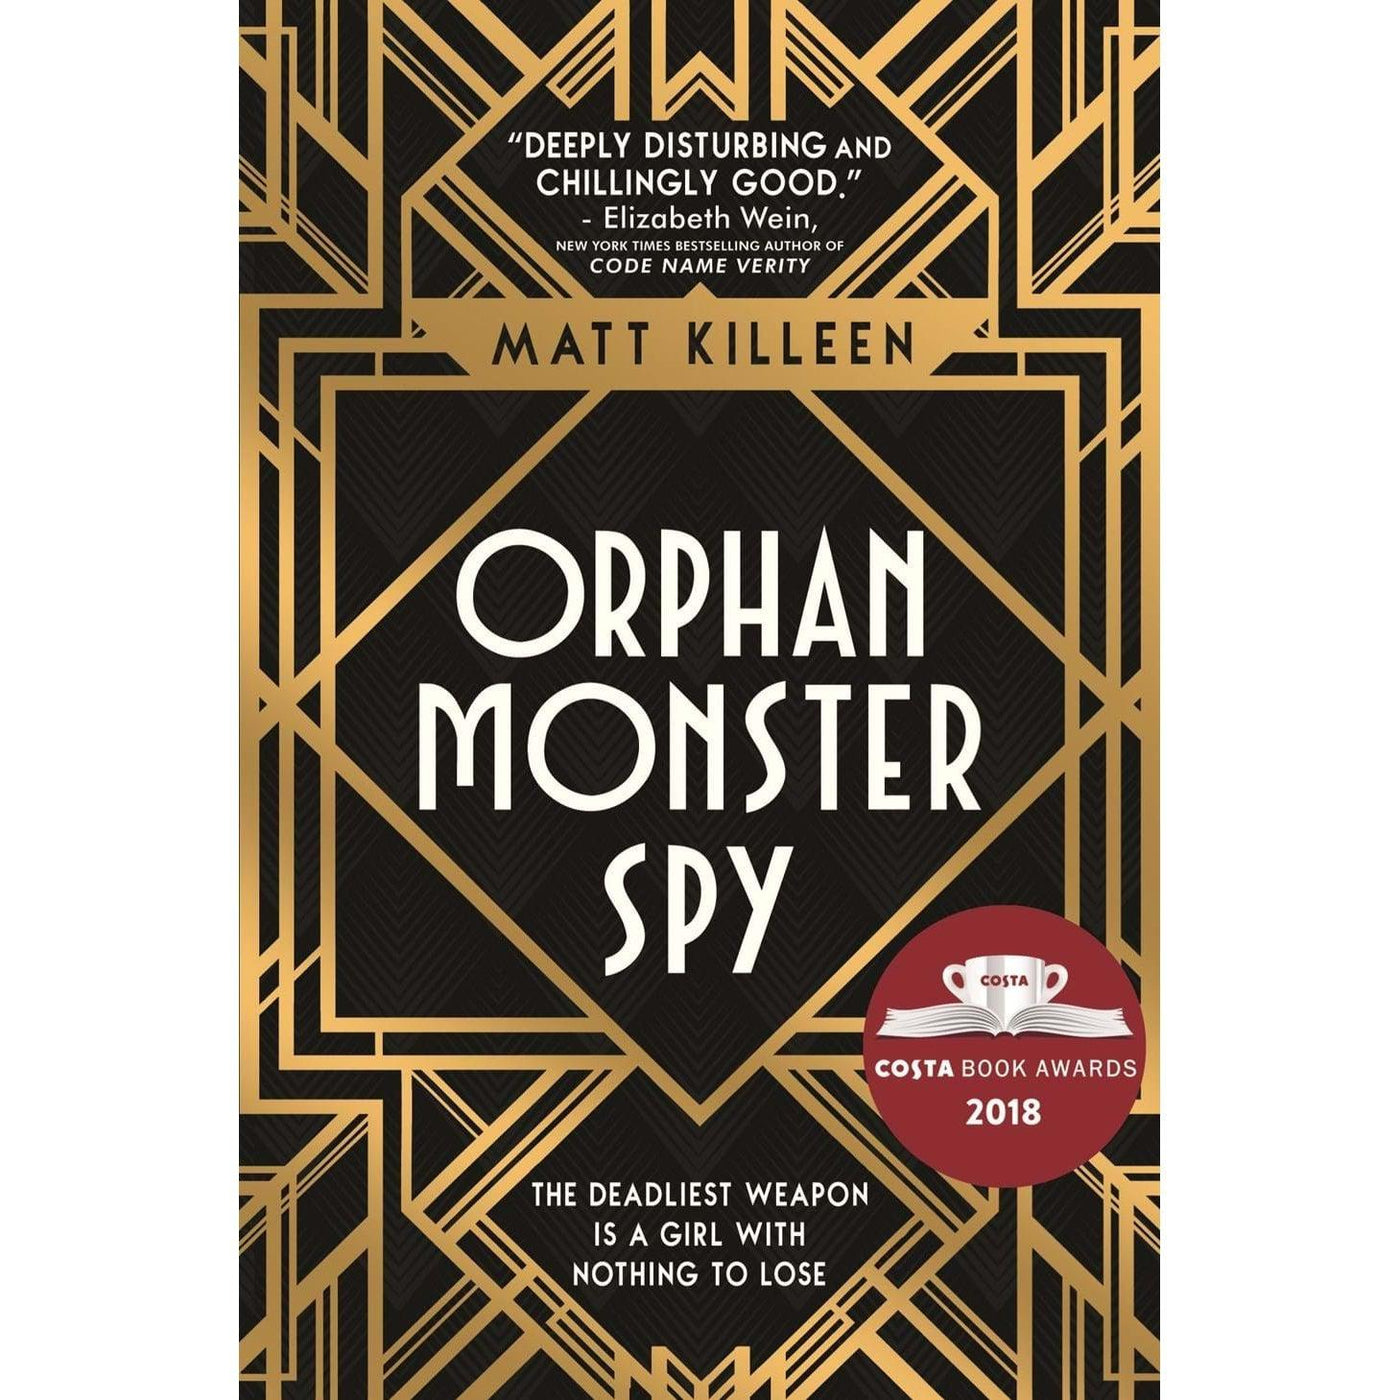 Orphan Monster Spy - Matt Killeen